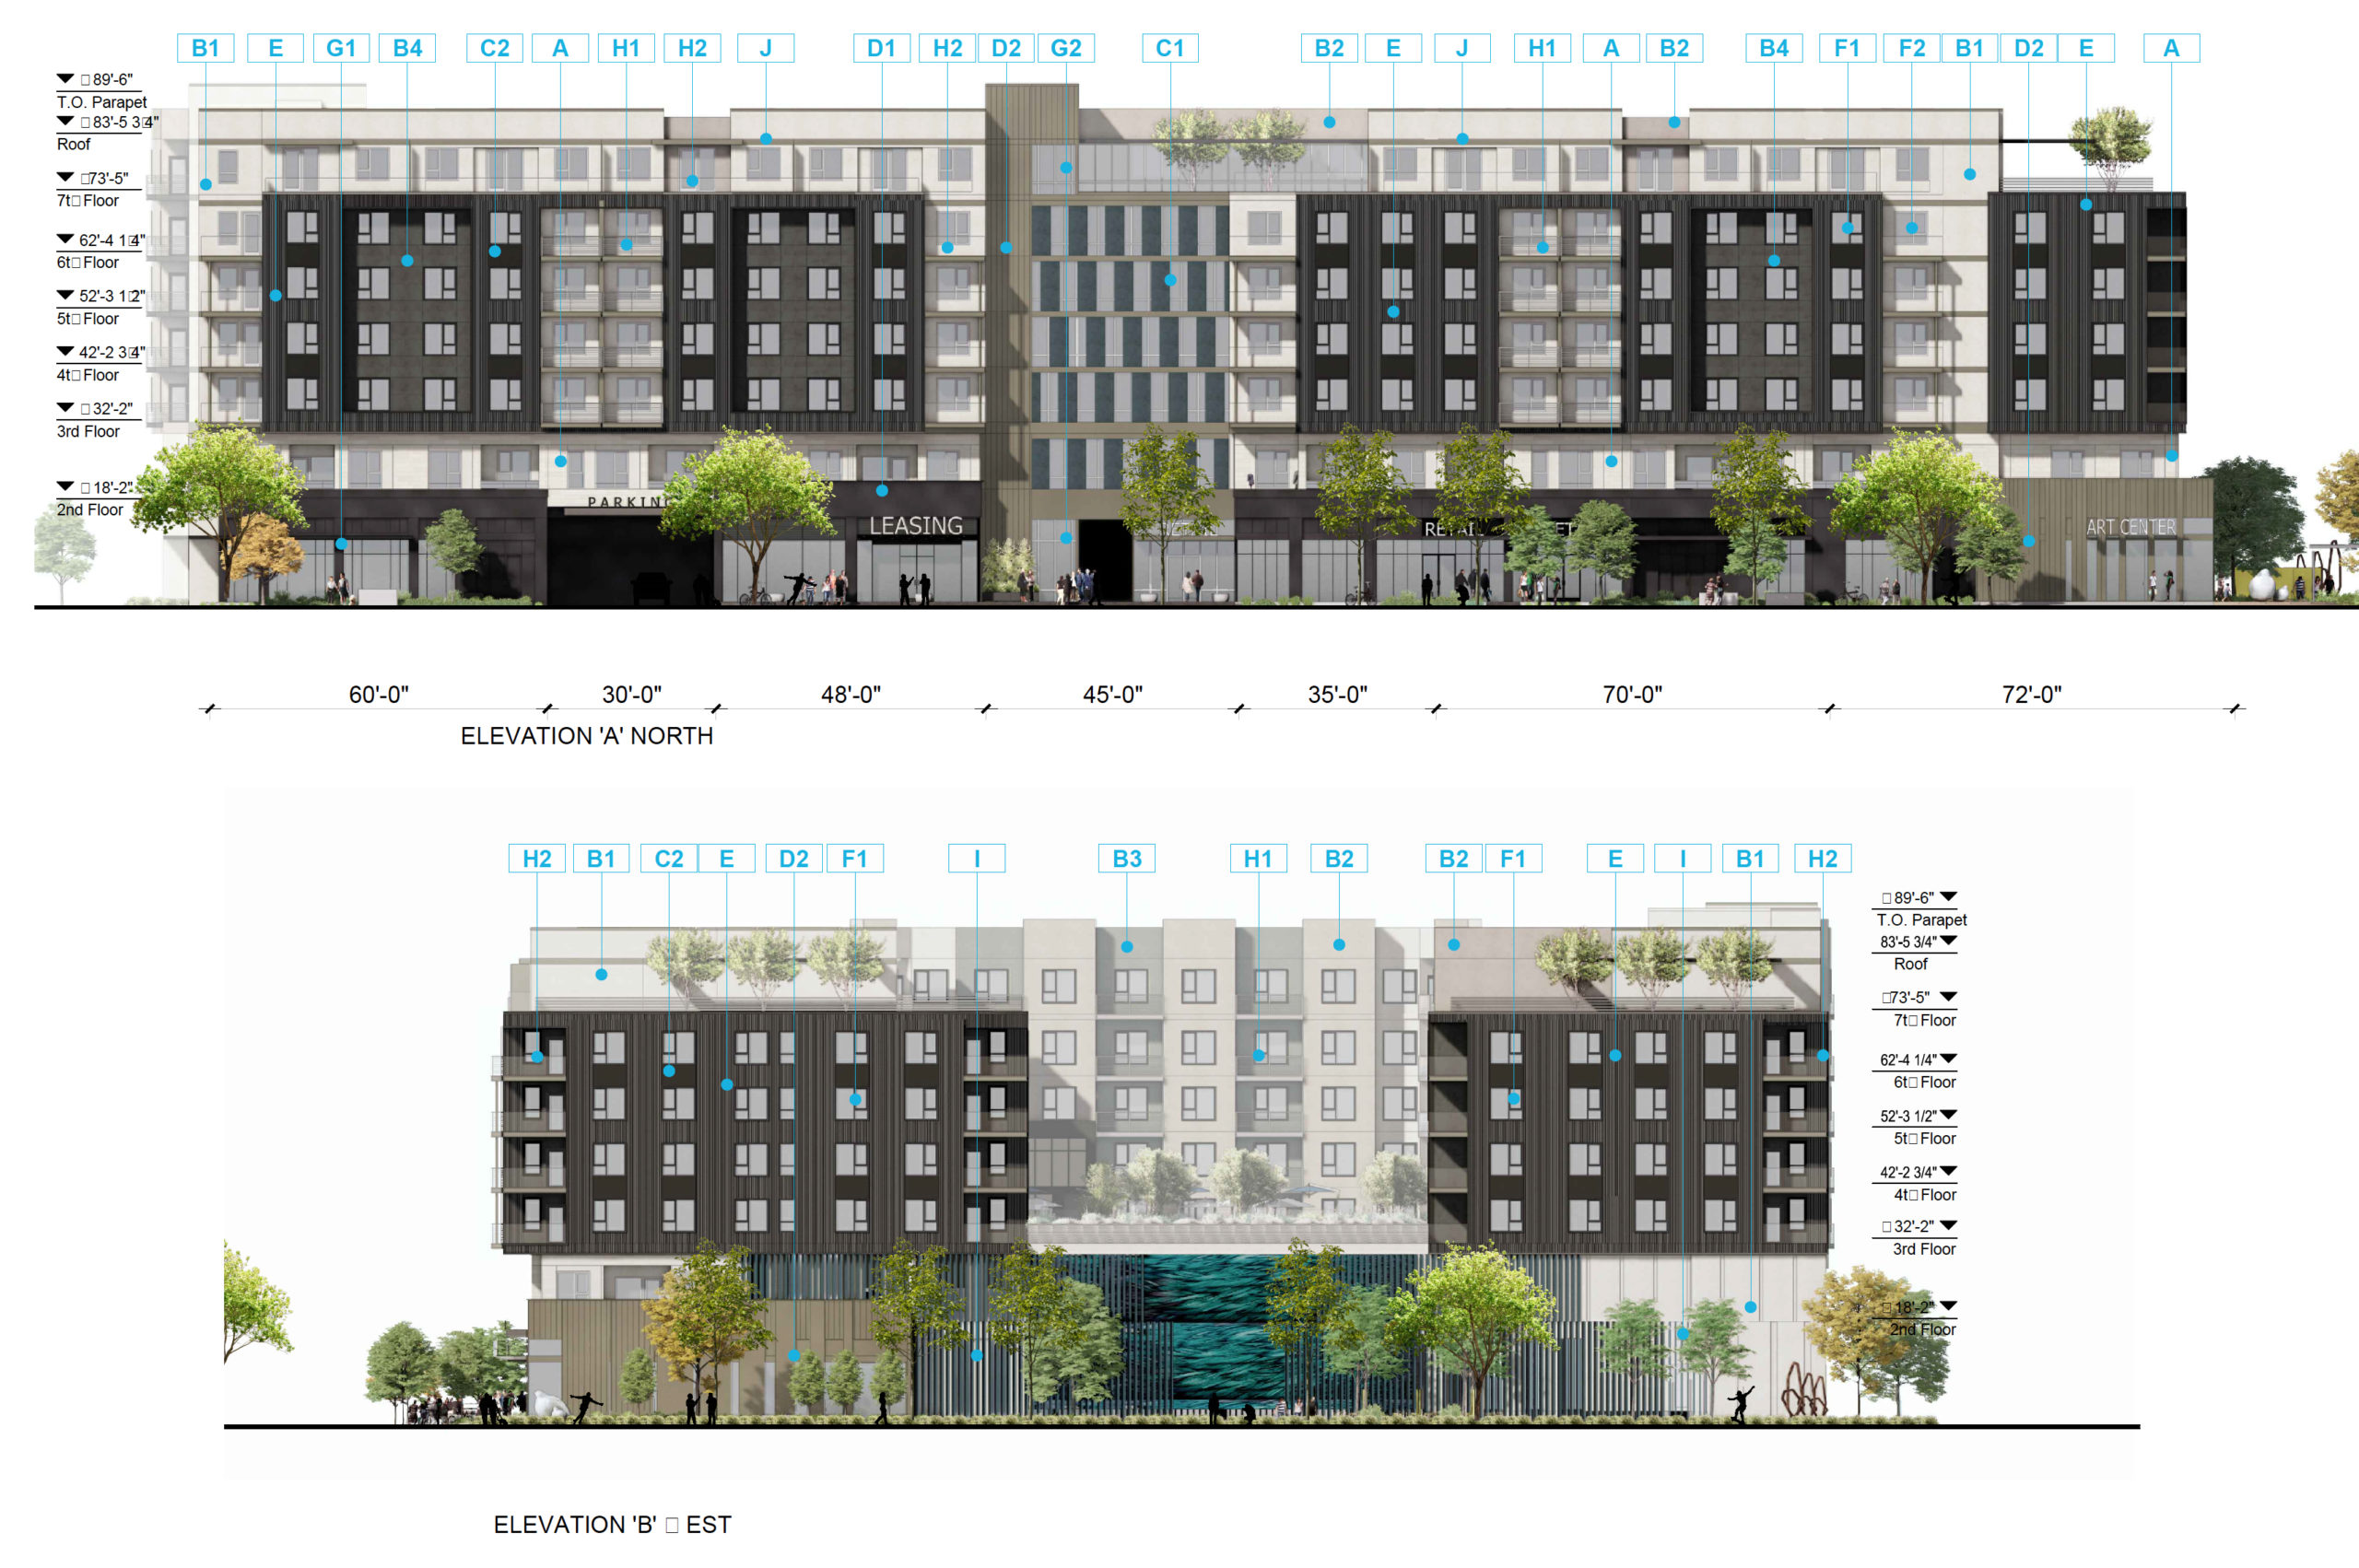 3000 Patrick Henry Drive facade elevation, illustration by KTGY Architects